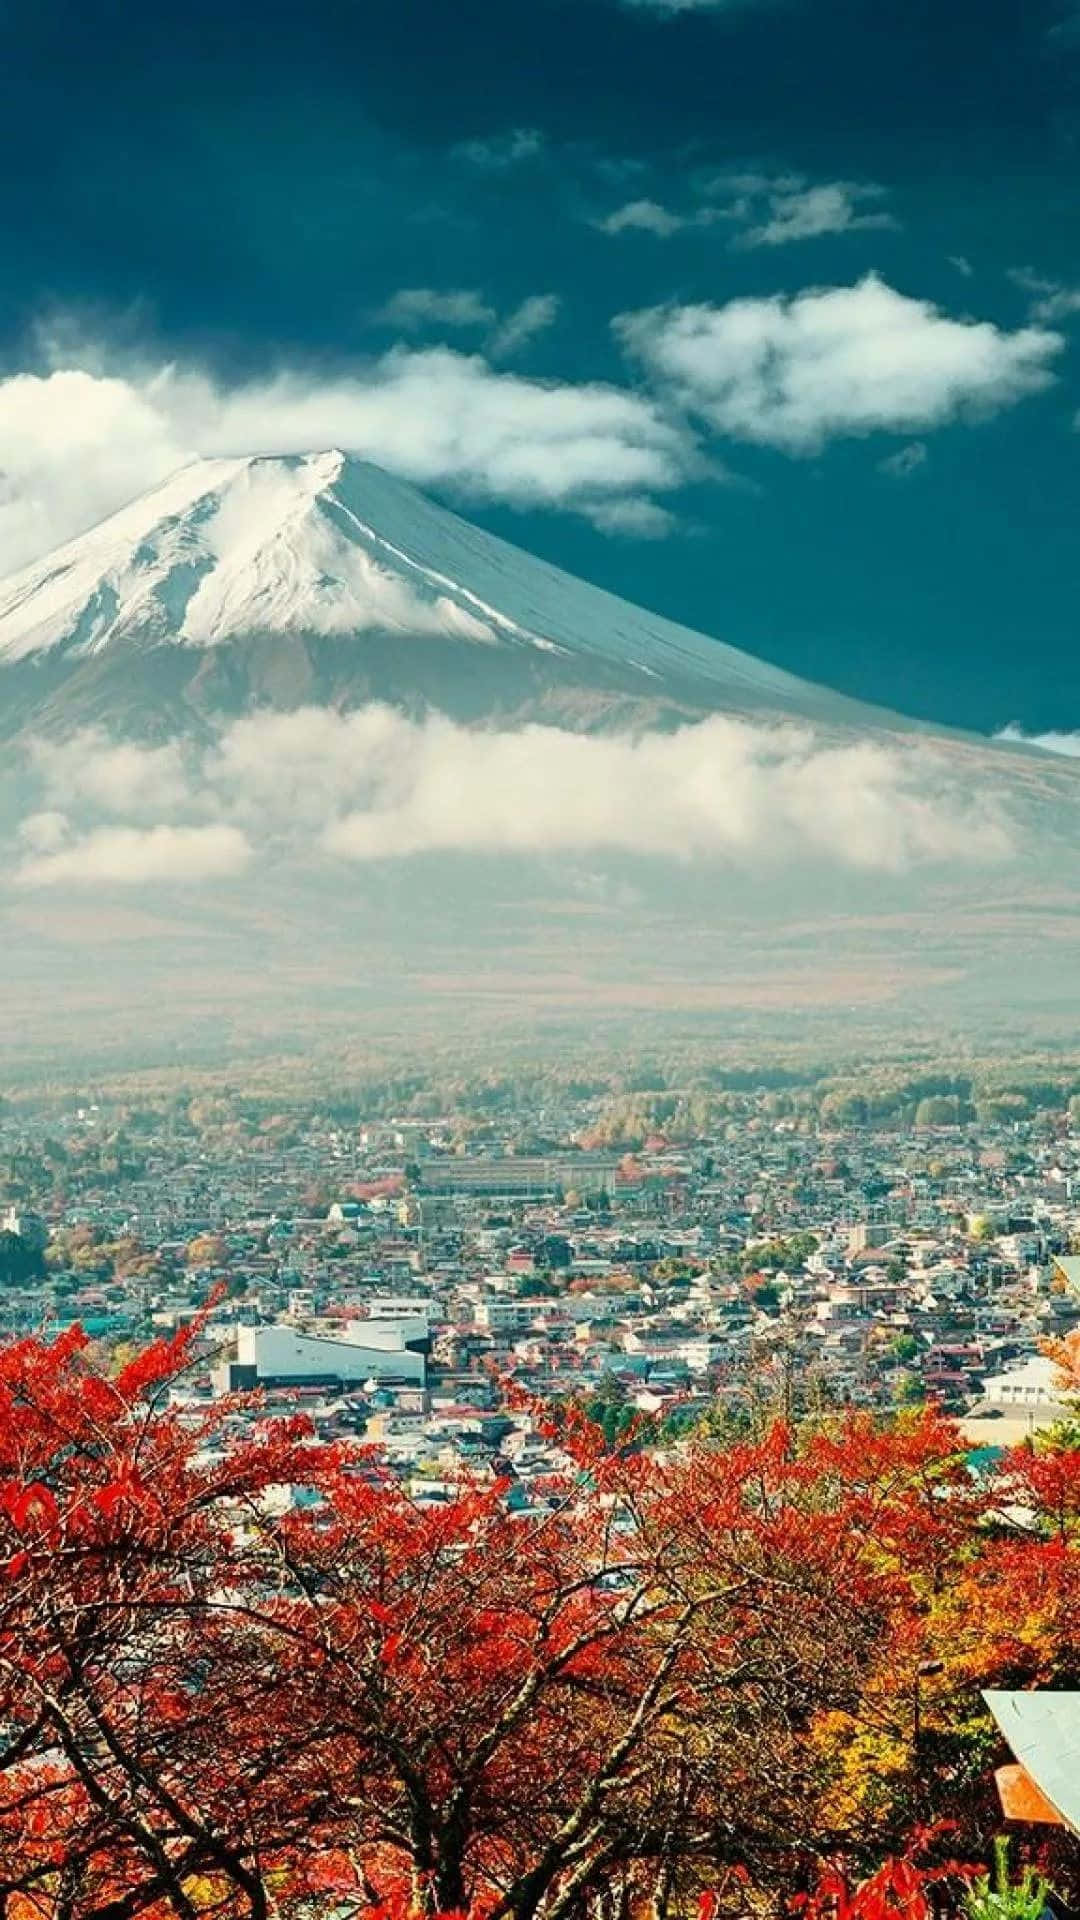 Papel De Parede Do Monte Fuji Japonês Para Iphone. Papel de Parede